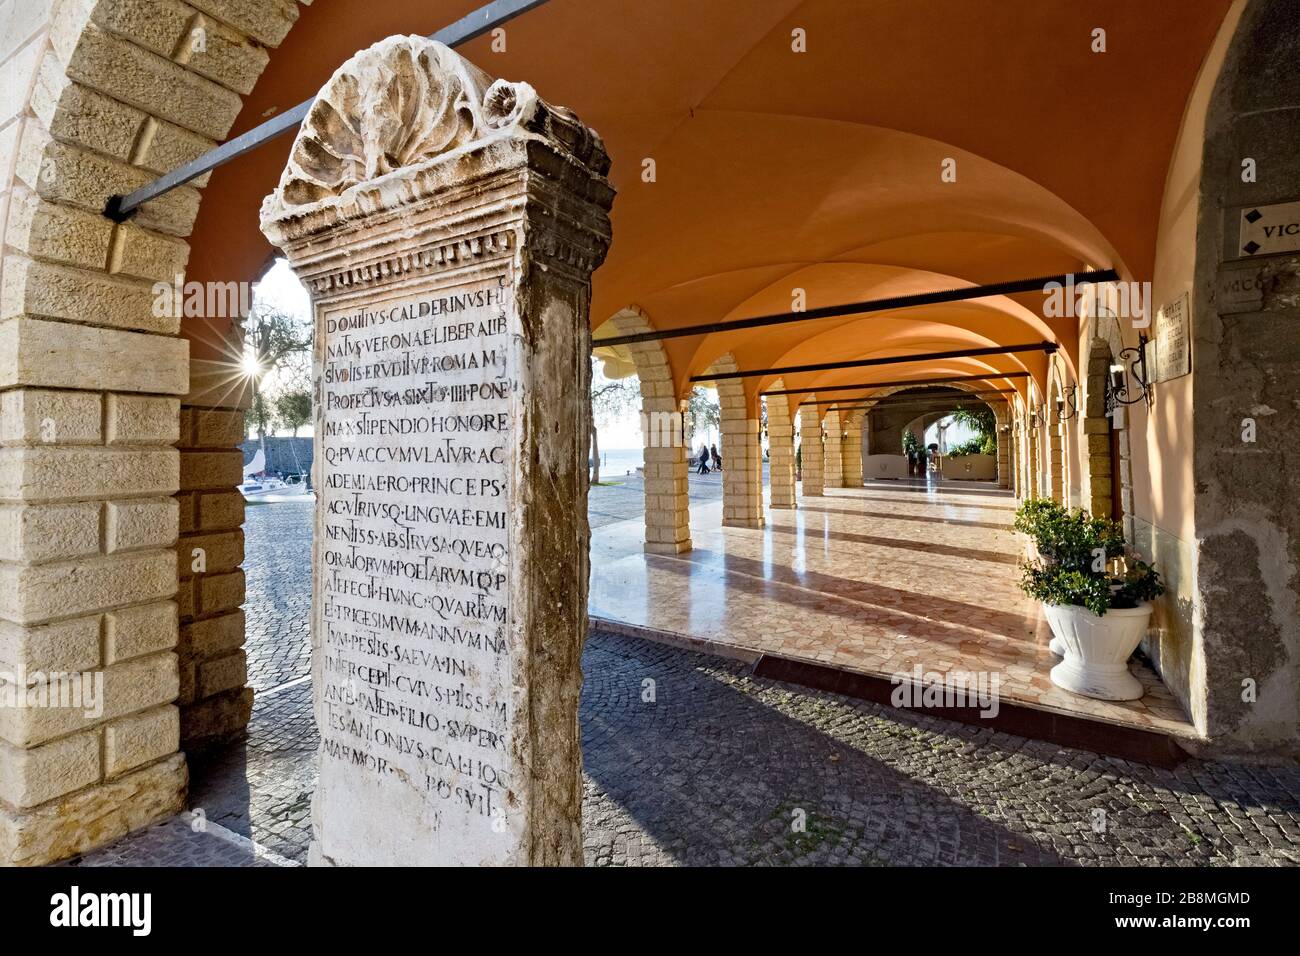 Torri del Benaco: Die Stele in Erinnerung an den Humanisten Domizio Calderini, der 1446 in diesem Dorf geboren wurde. Gardasee, Venetien, Italien. Stockfoto